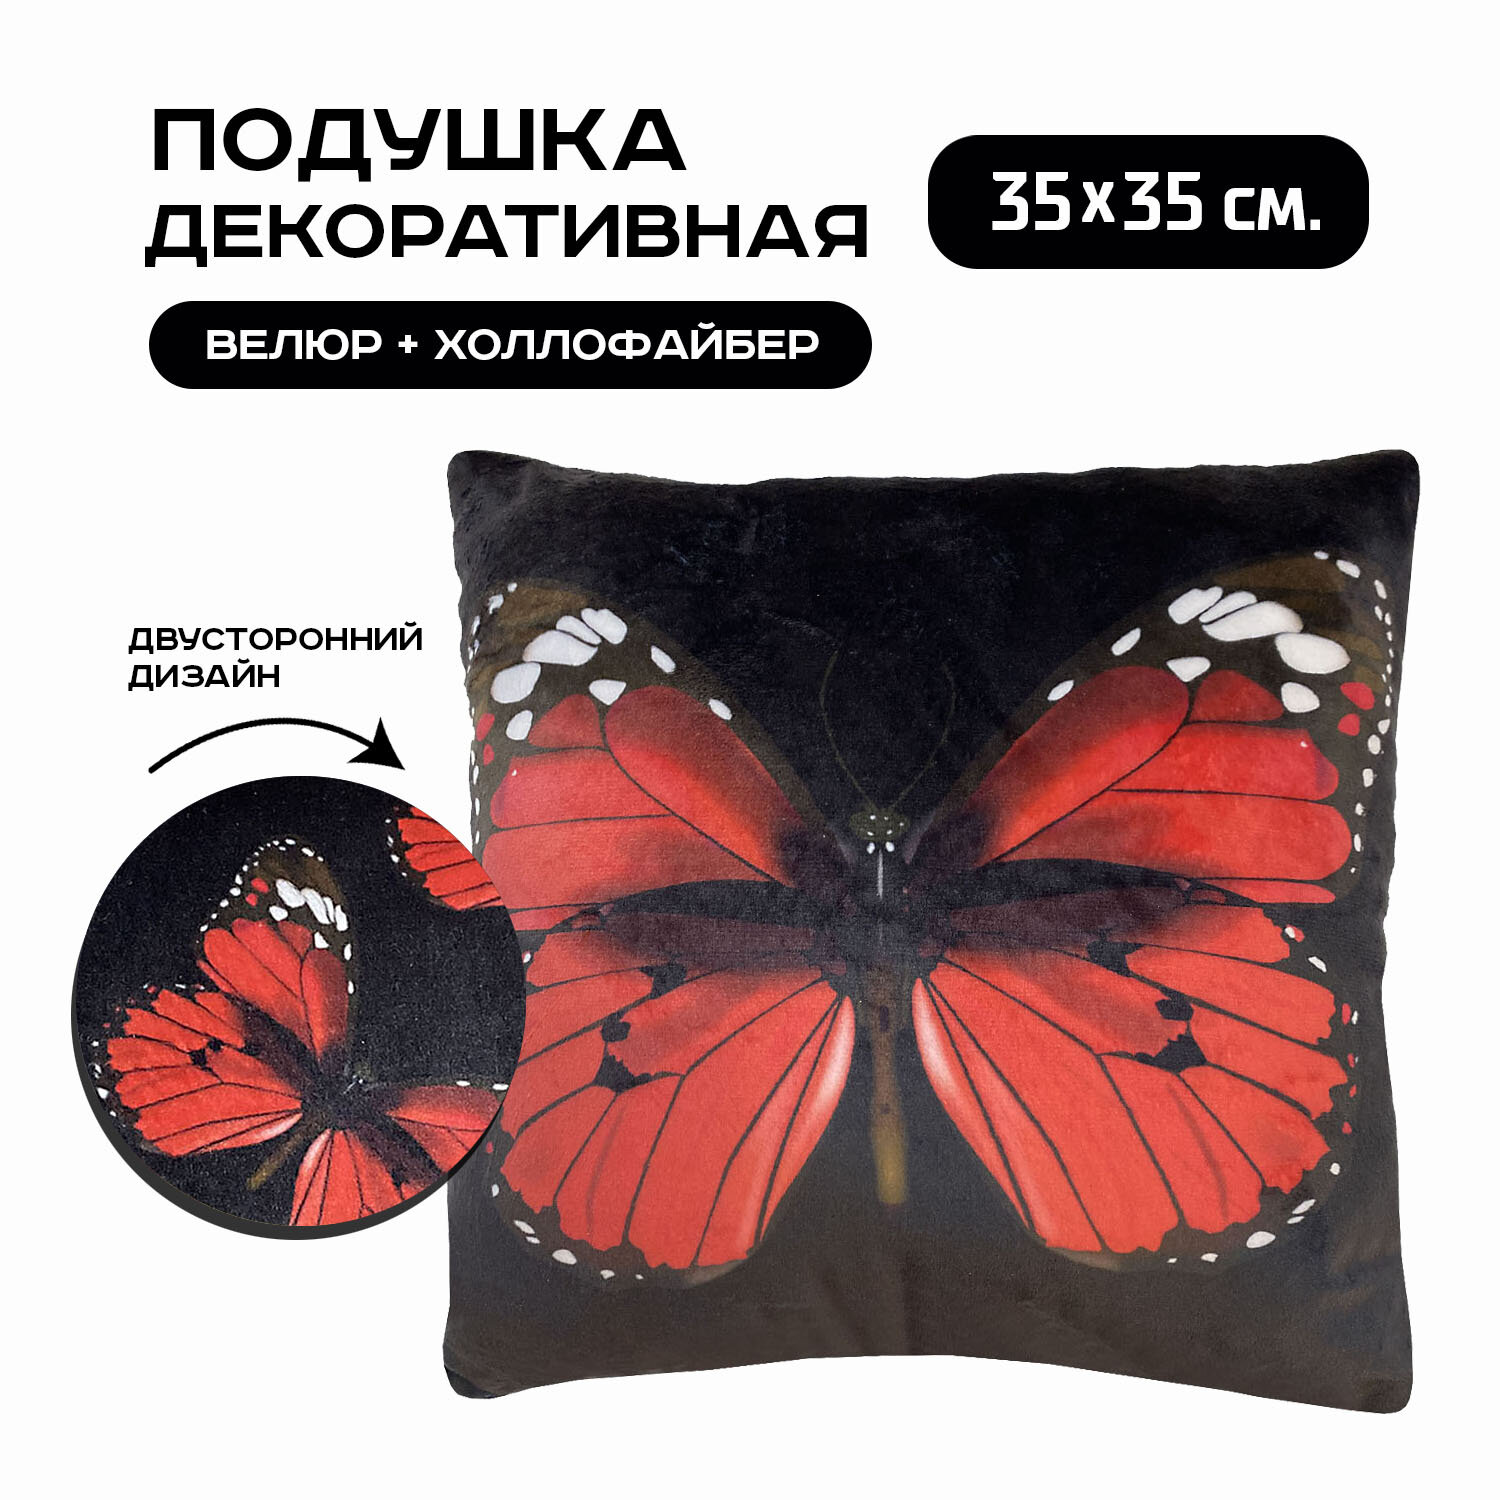 Подушка декоративная Красная бабочка, размер 35х35 см, для дивана и кресла, подарок на день рождения, подарок на 8 марта, подарок женщине